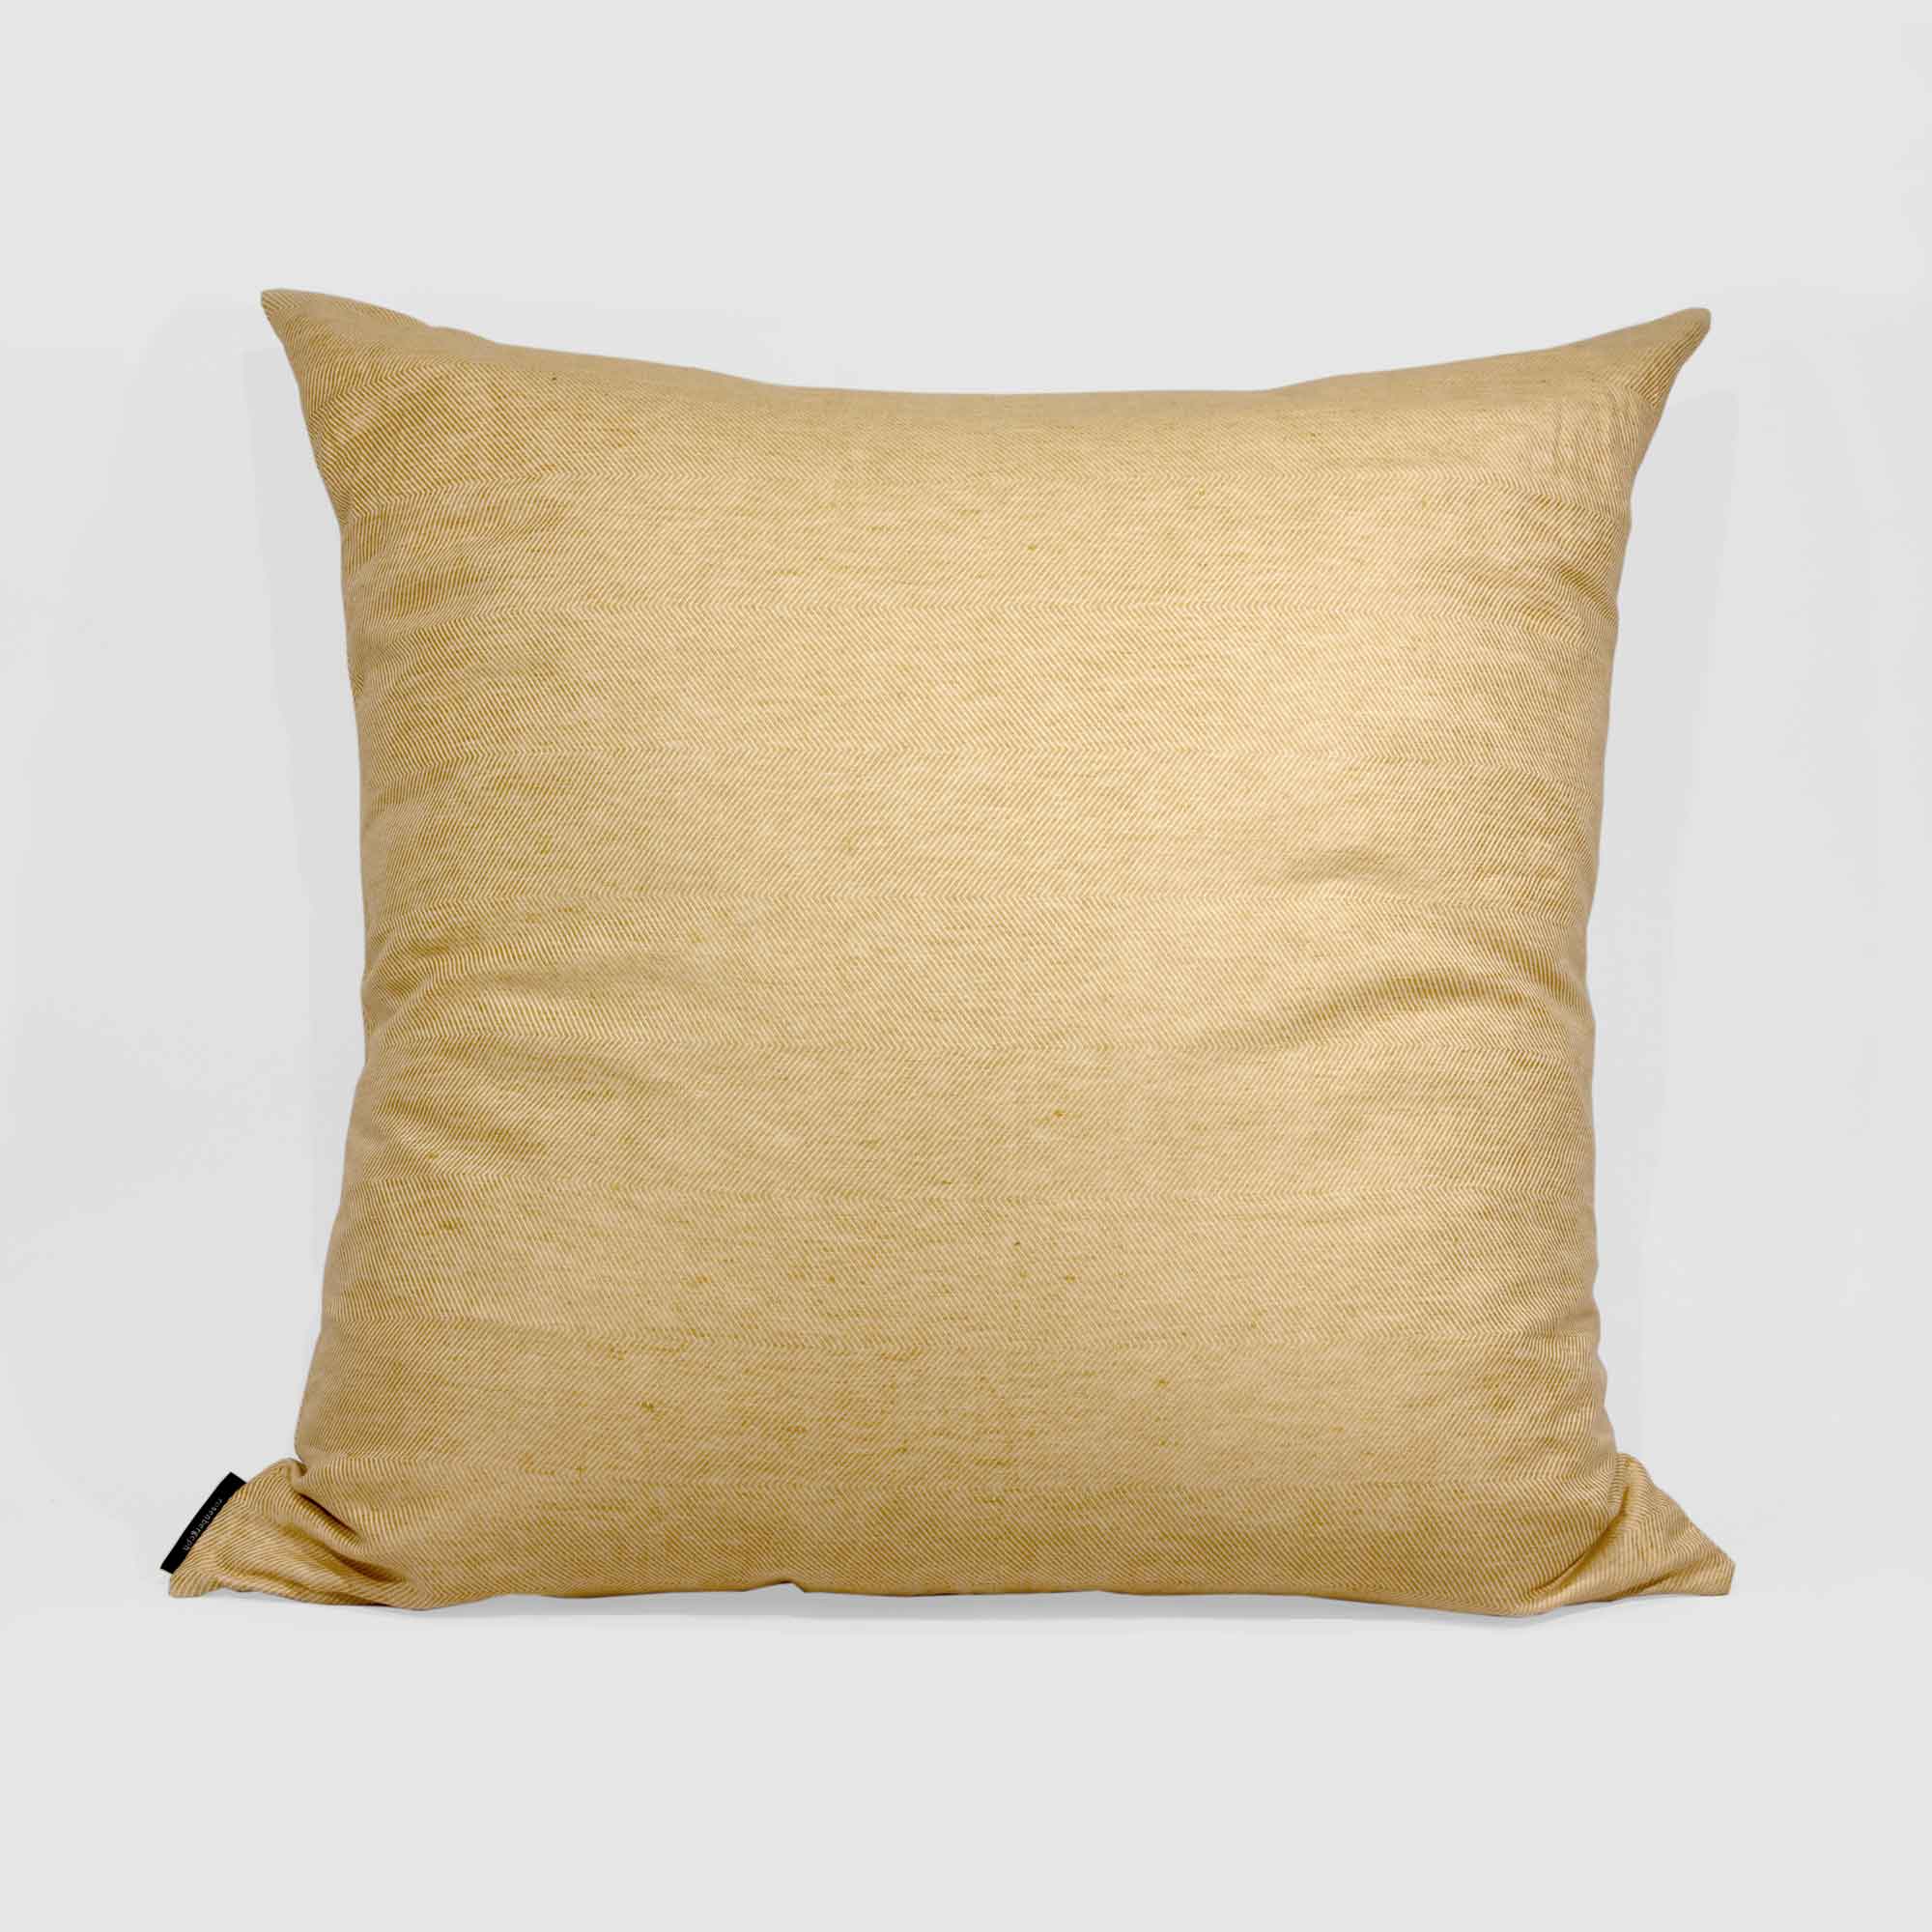 Floor cushion cover linen/cotton hay yellow design by Anne Rosenberg, RosenbergCph